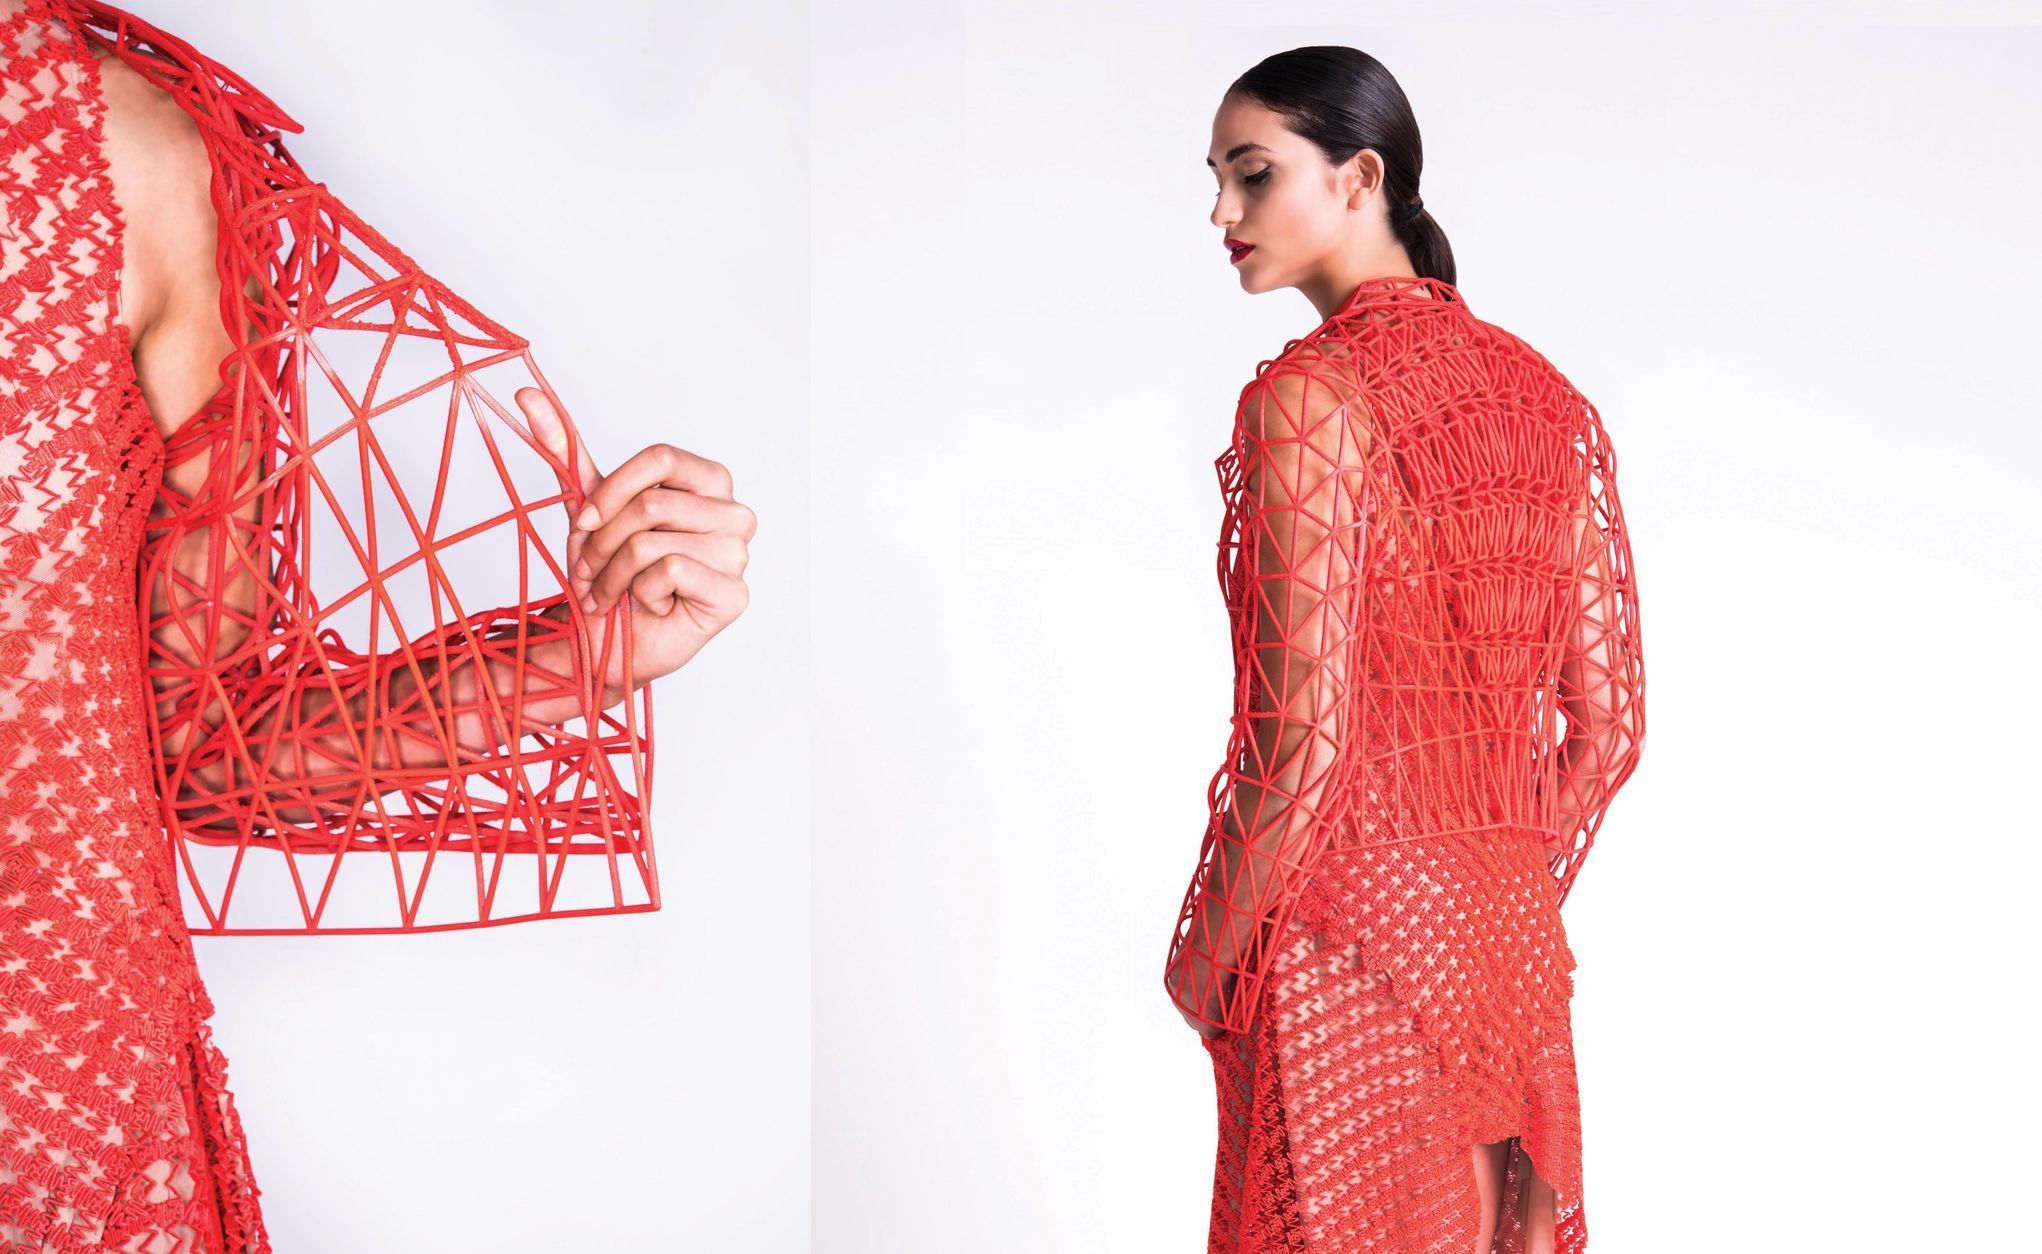 Návrhářka Danit Peleg - módní kolekce na 3D tiskárně